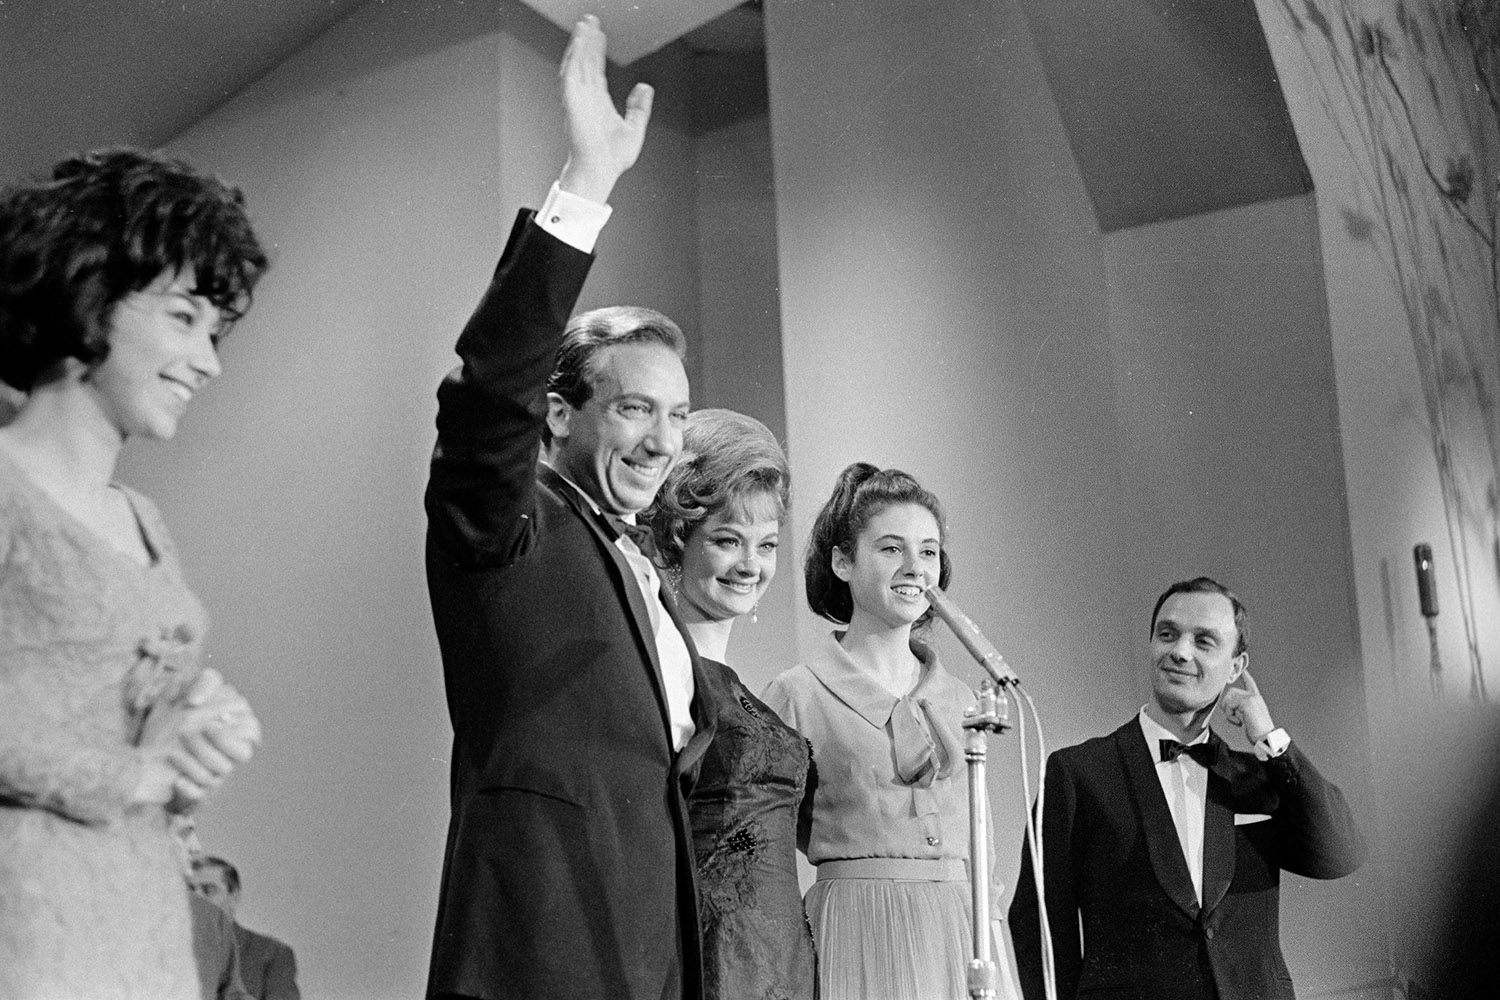 Mike Bongiorno e Giuliana Lojodice, con la quale conduce il XIV Festival di Sanremo, sul palco con Gigliola Cinquetti e Patricia Carli (a sinistra), che hanno vinto con la canzone "Non ho l'età", 1964. Fotografia di Sergio Cossu